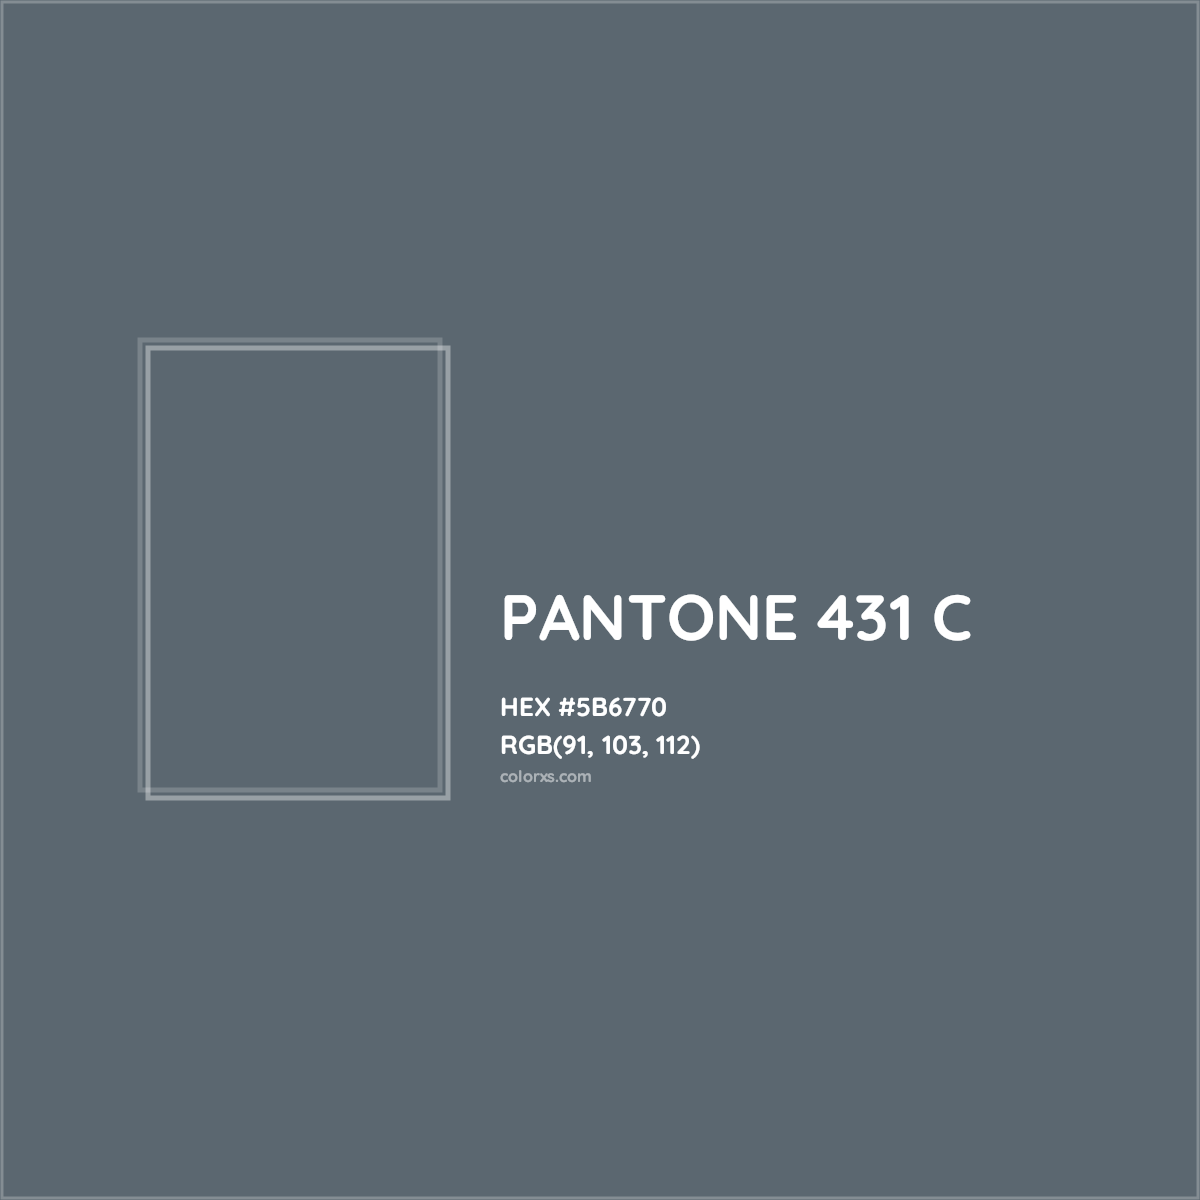 HEX #5B6770 PANTONE 431 C CMS Pantone PMS - Color Code